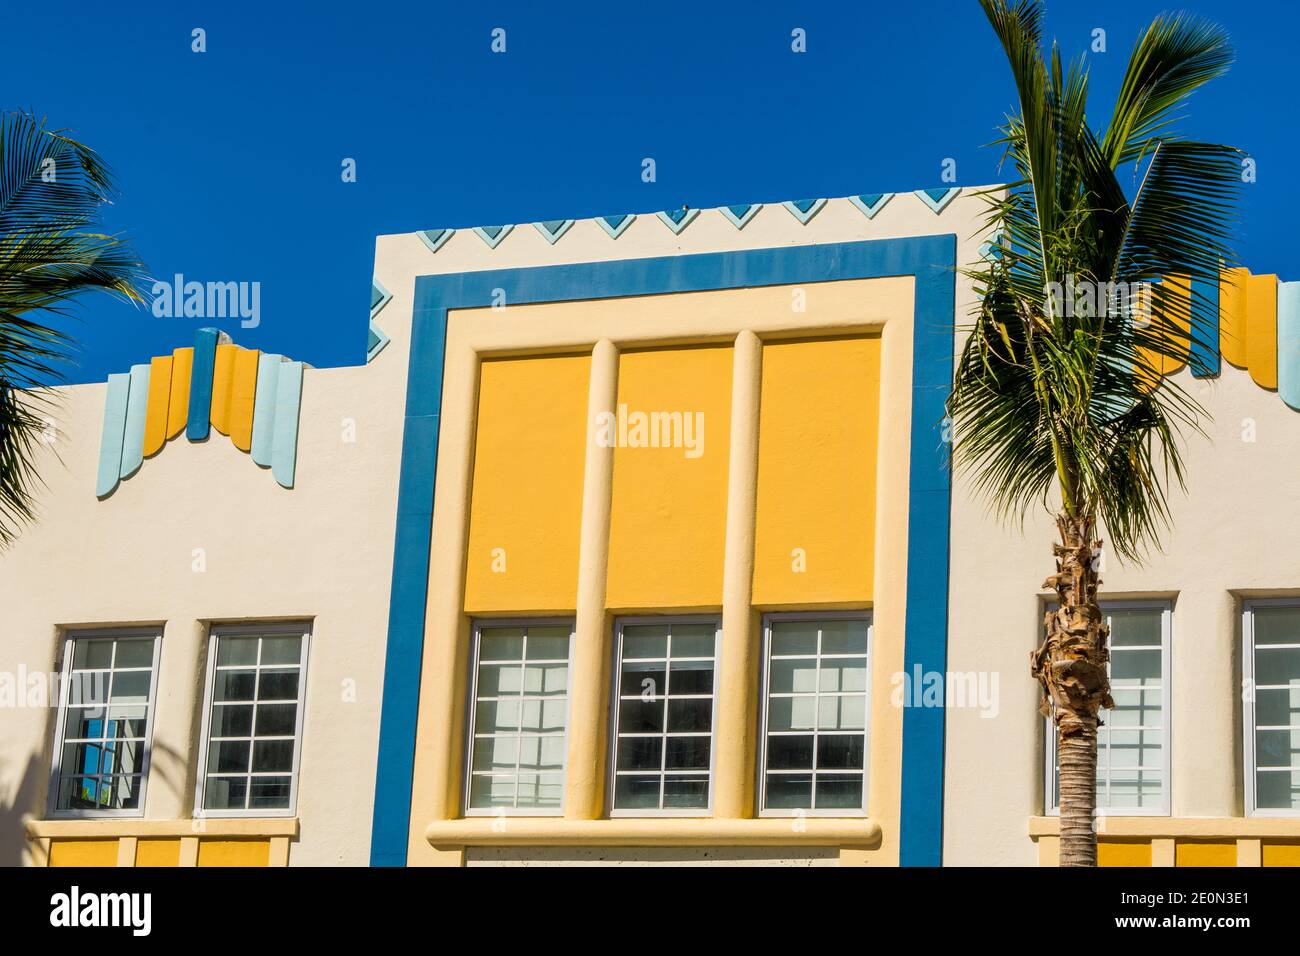 Art Deco architecture in South Beach district, Miami, Florida. Stock Photo